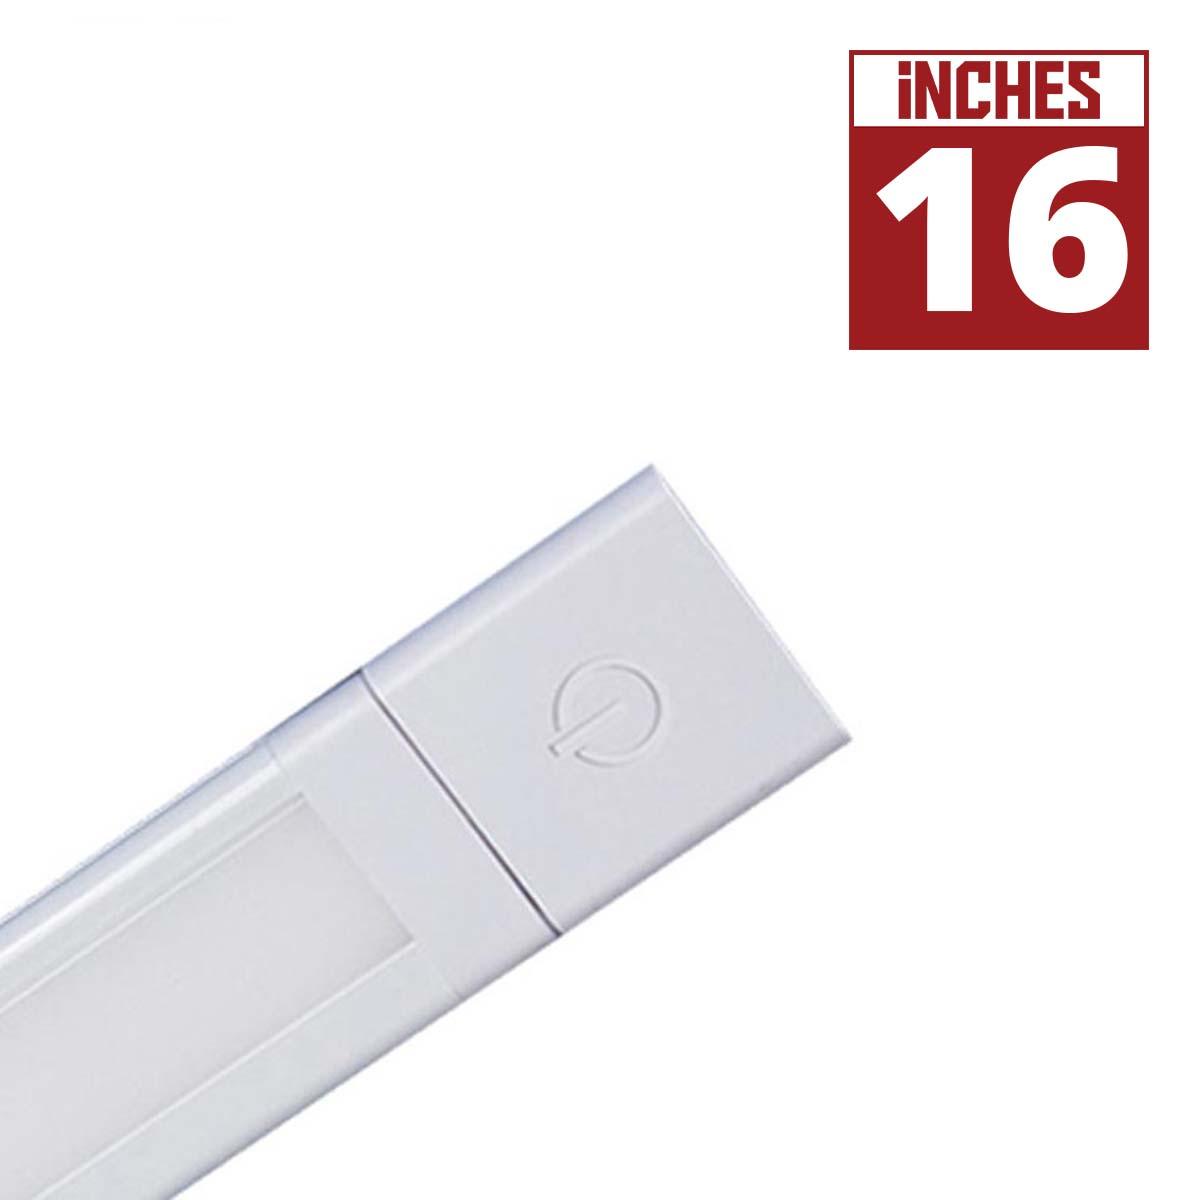 SlimEdge 16 Inch Modular Architectural Lightbar, 325 Lumens, Linkable, 24V - Bees Lighting